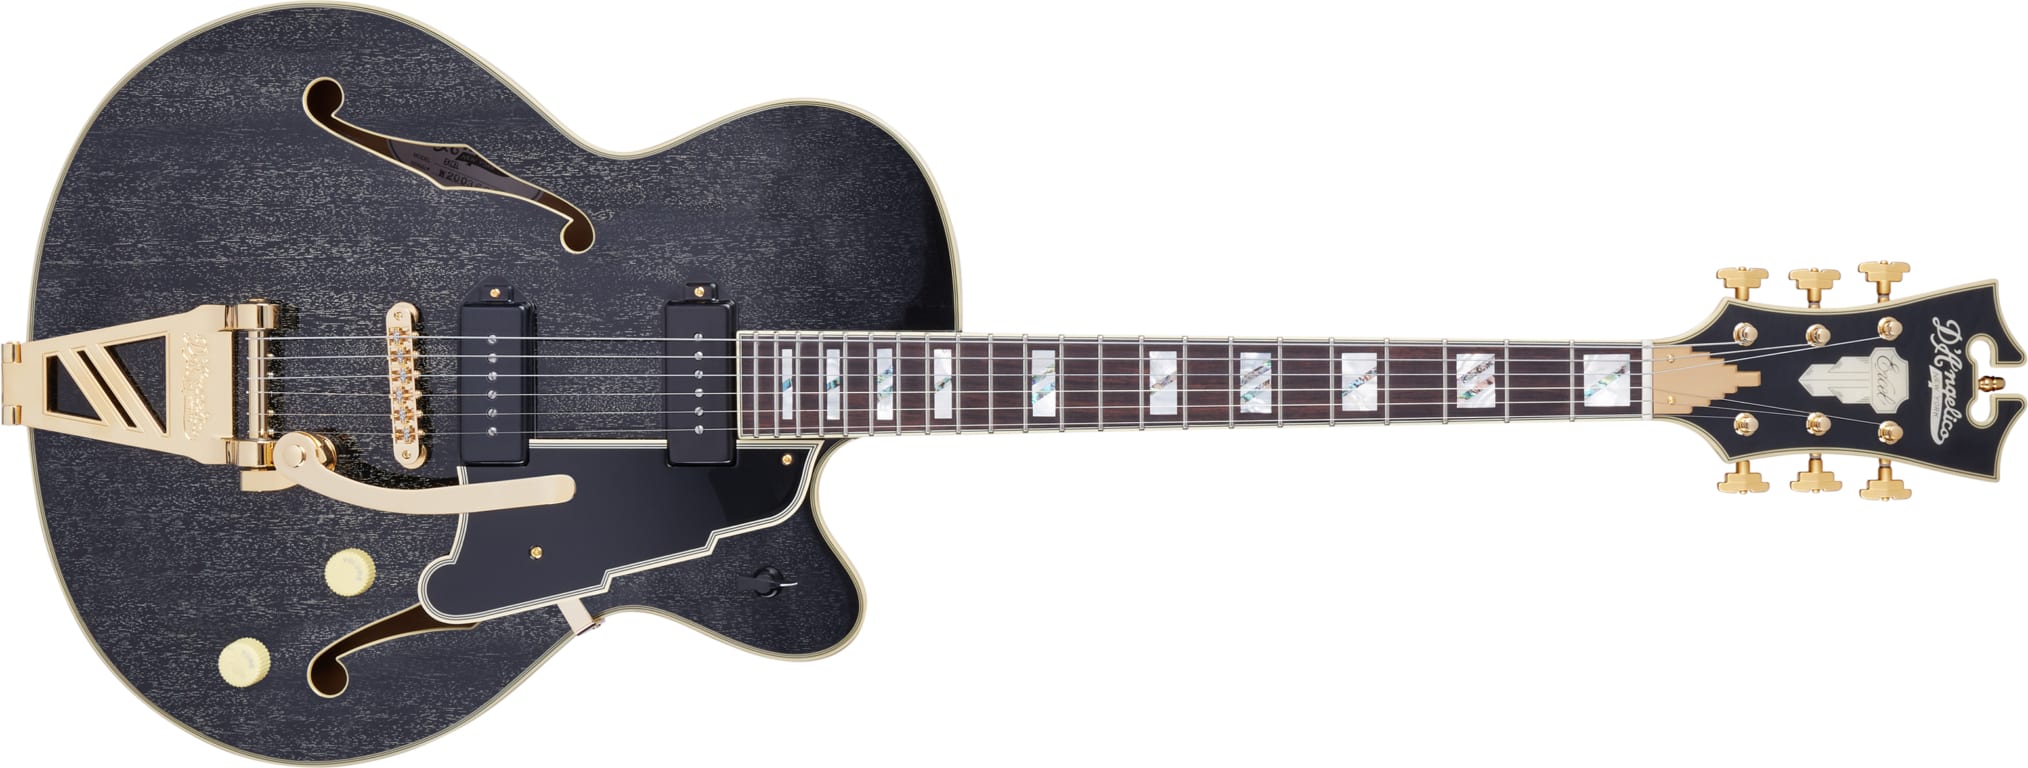 D'Angelico Guitars Excel ‘59 Black Dog